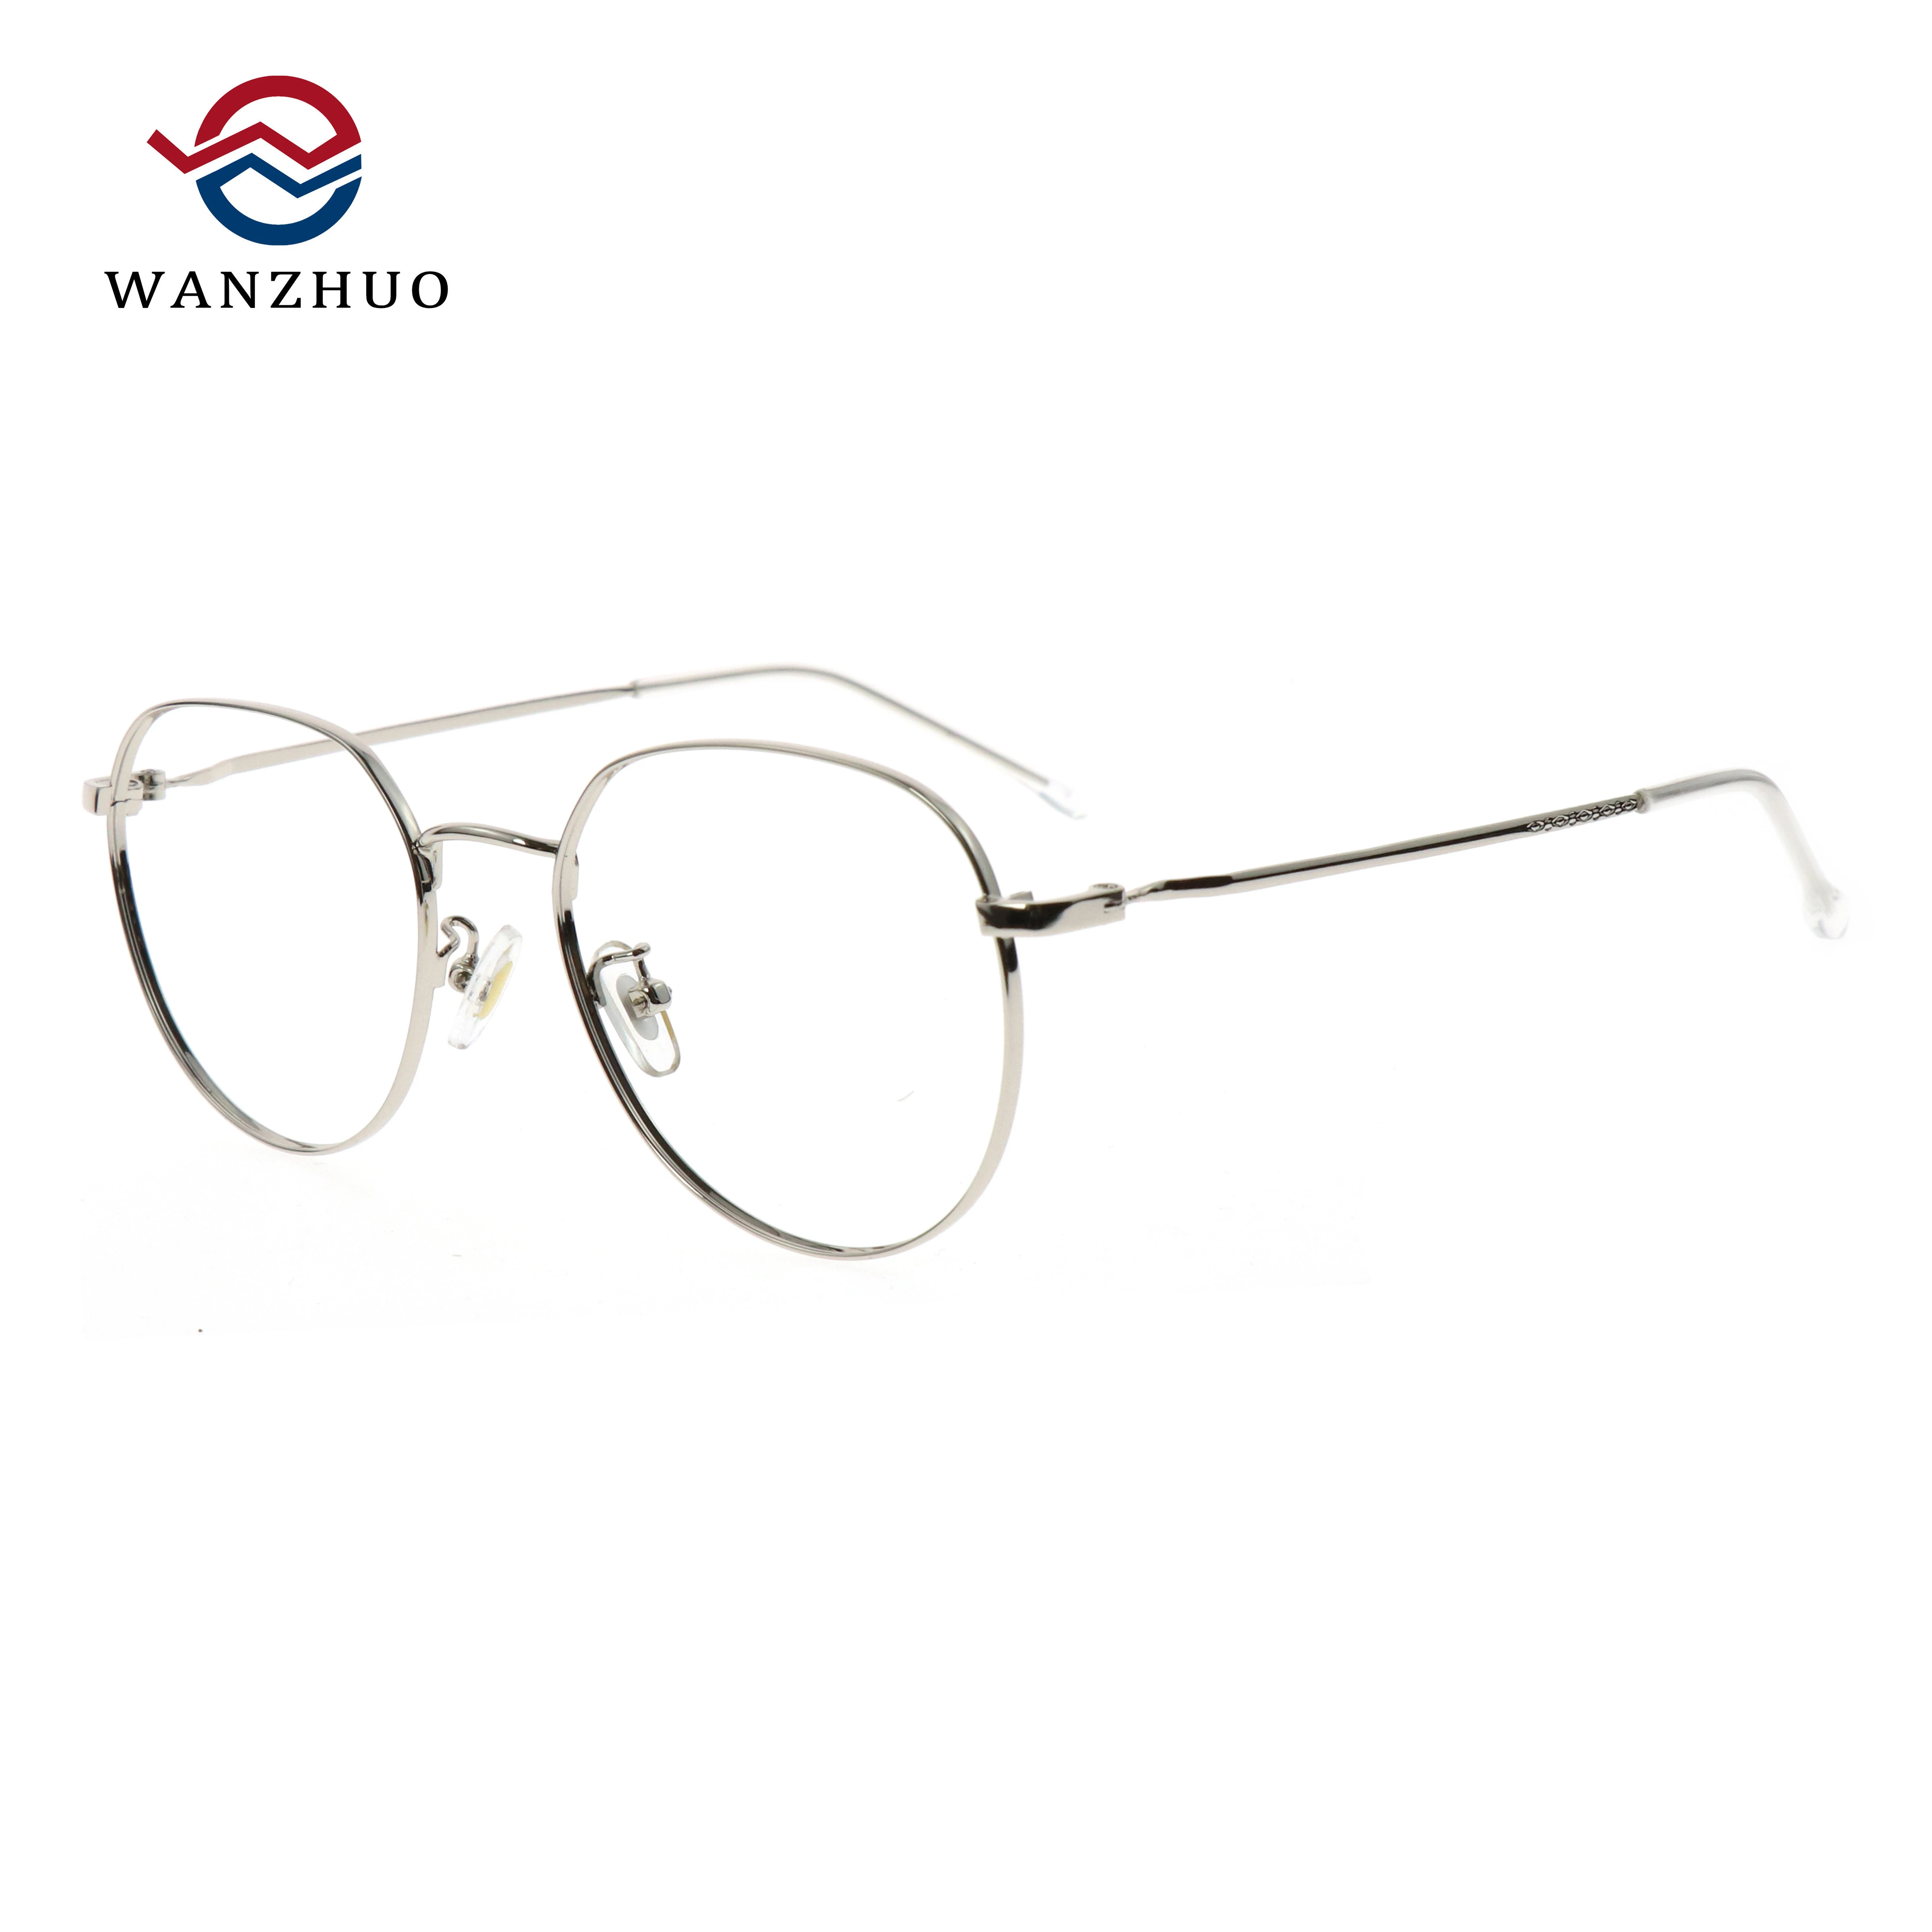 Latest round metal eyeglasses frame adult eyewear wholesale China unisex optical frame